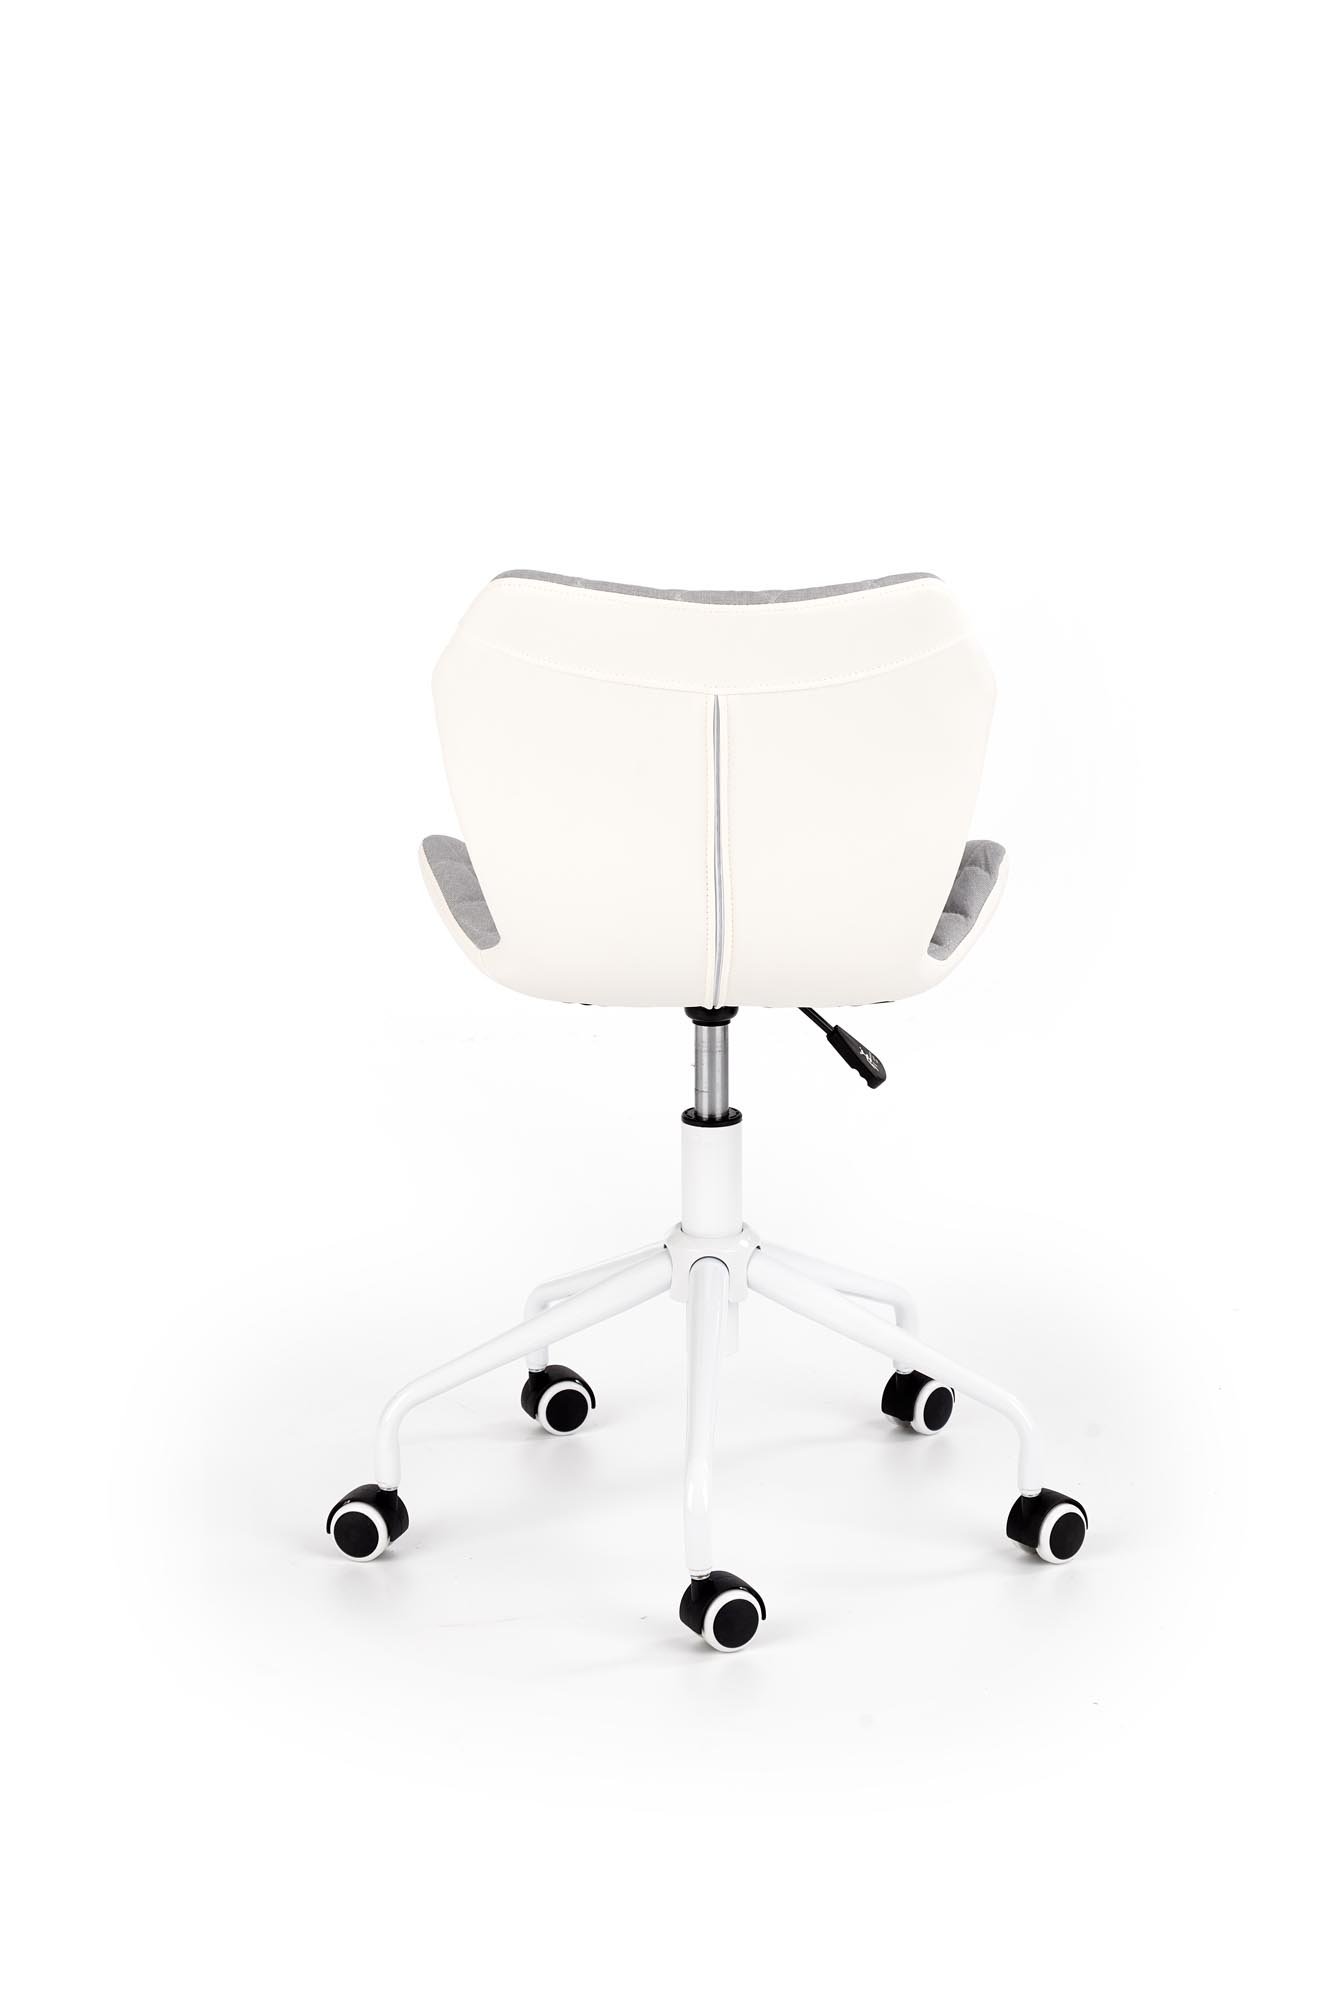 Vaikiška kėdė MATRIX 3, balta/pilka - 2